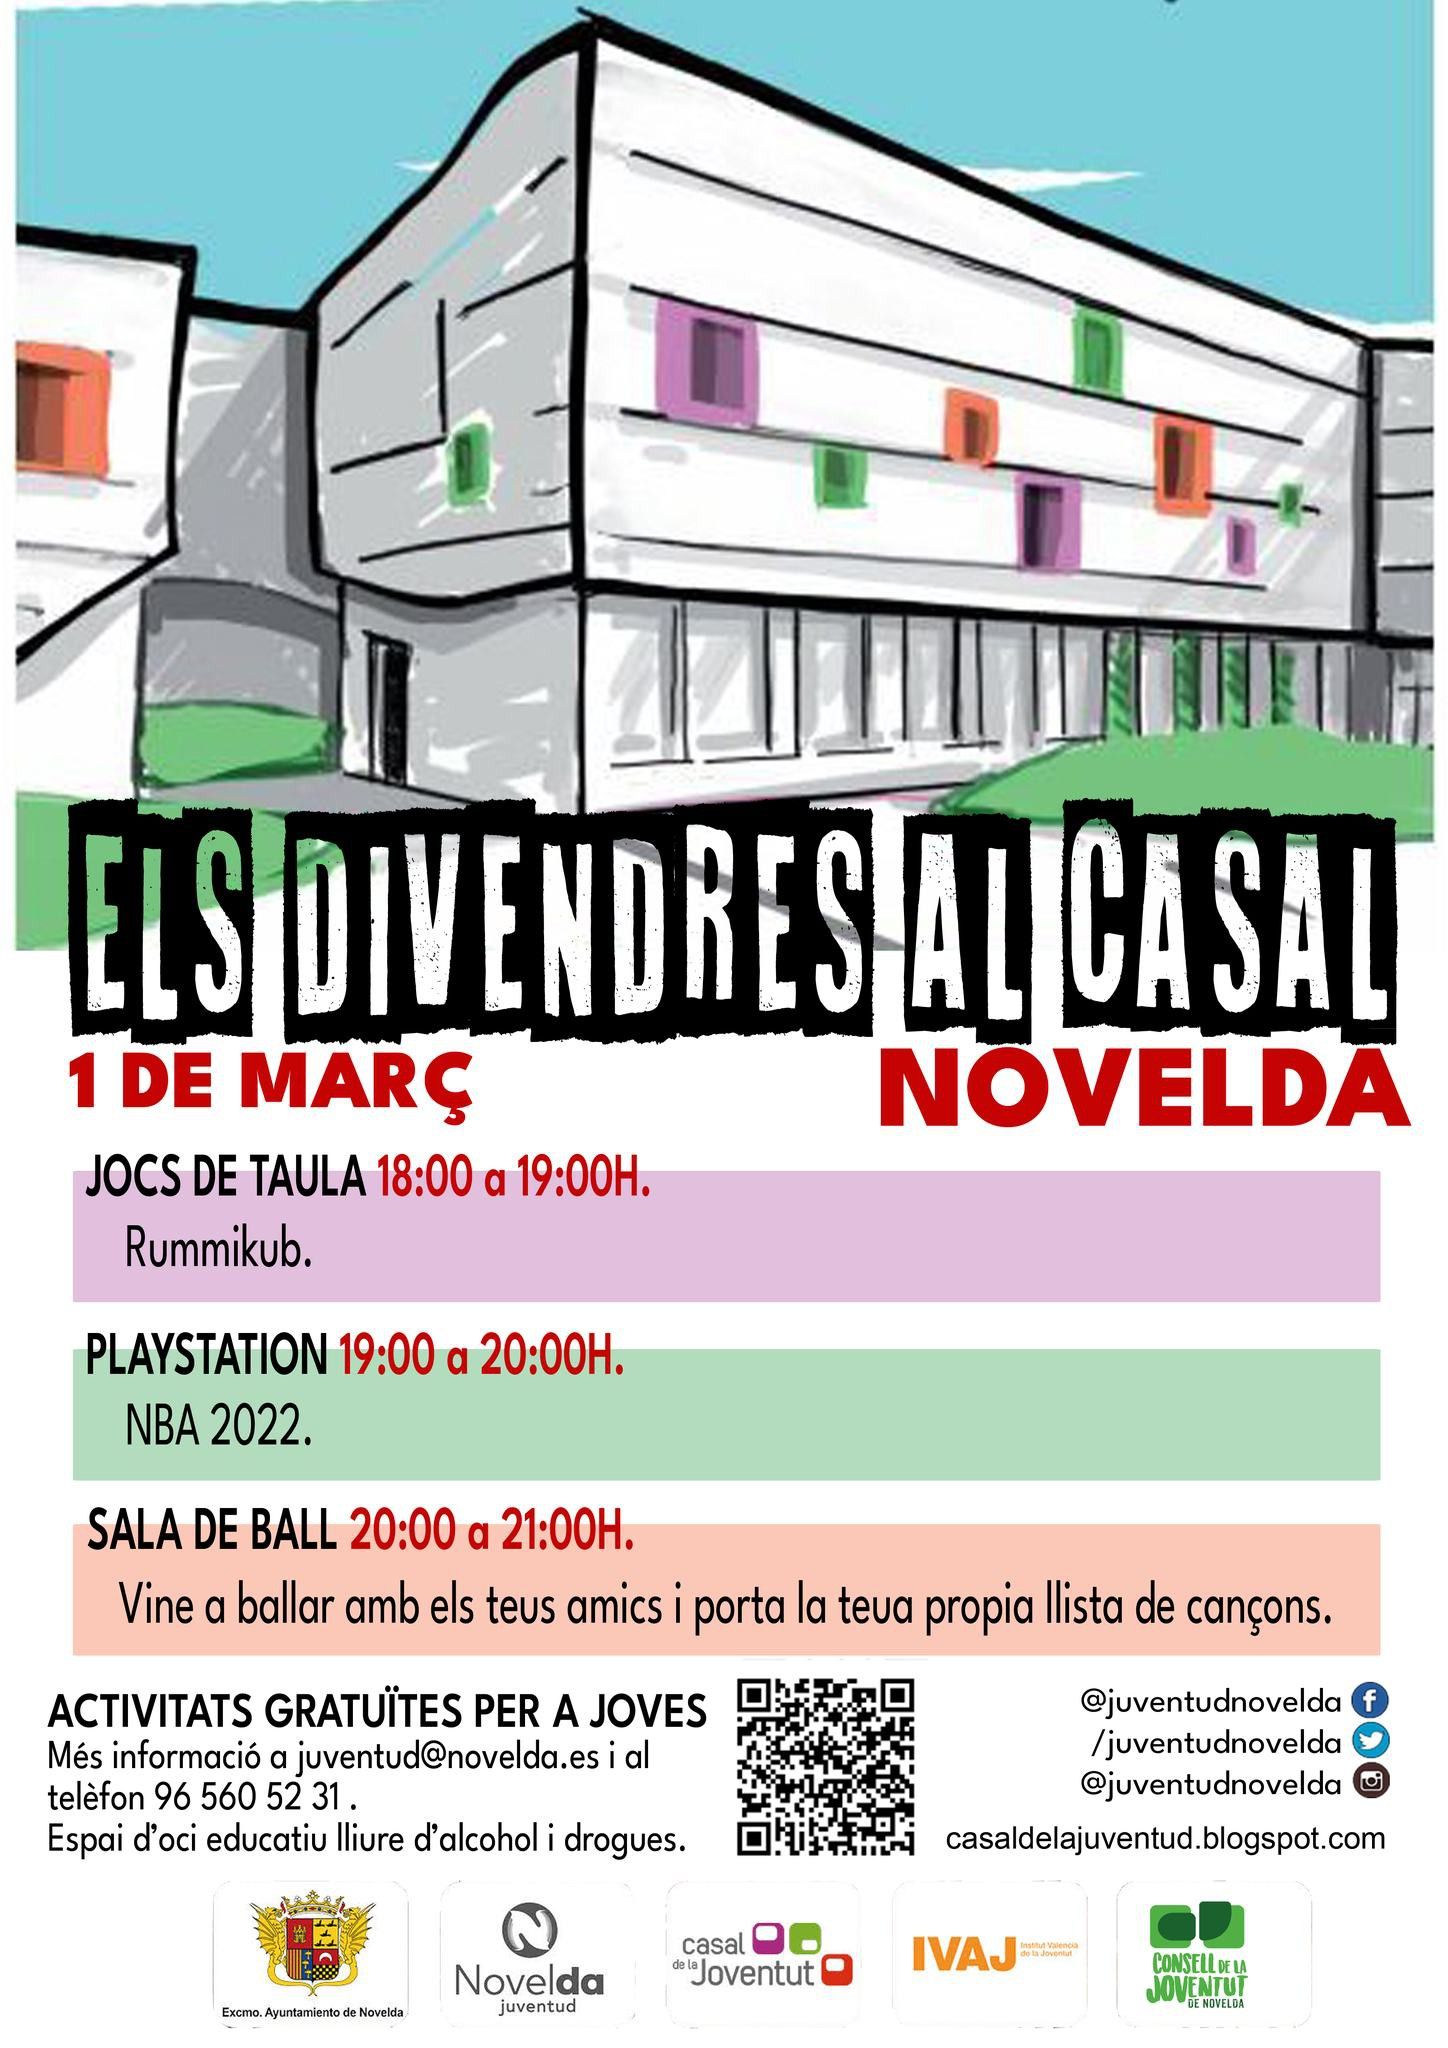 Ayuntamiento de Novelda Divendres-al-Casal-1 Viernes al Casal 